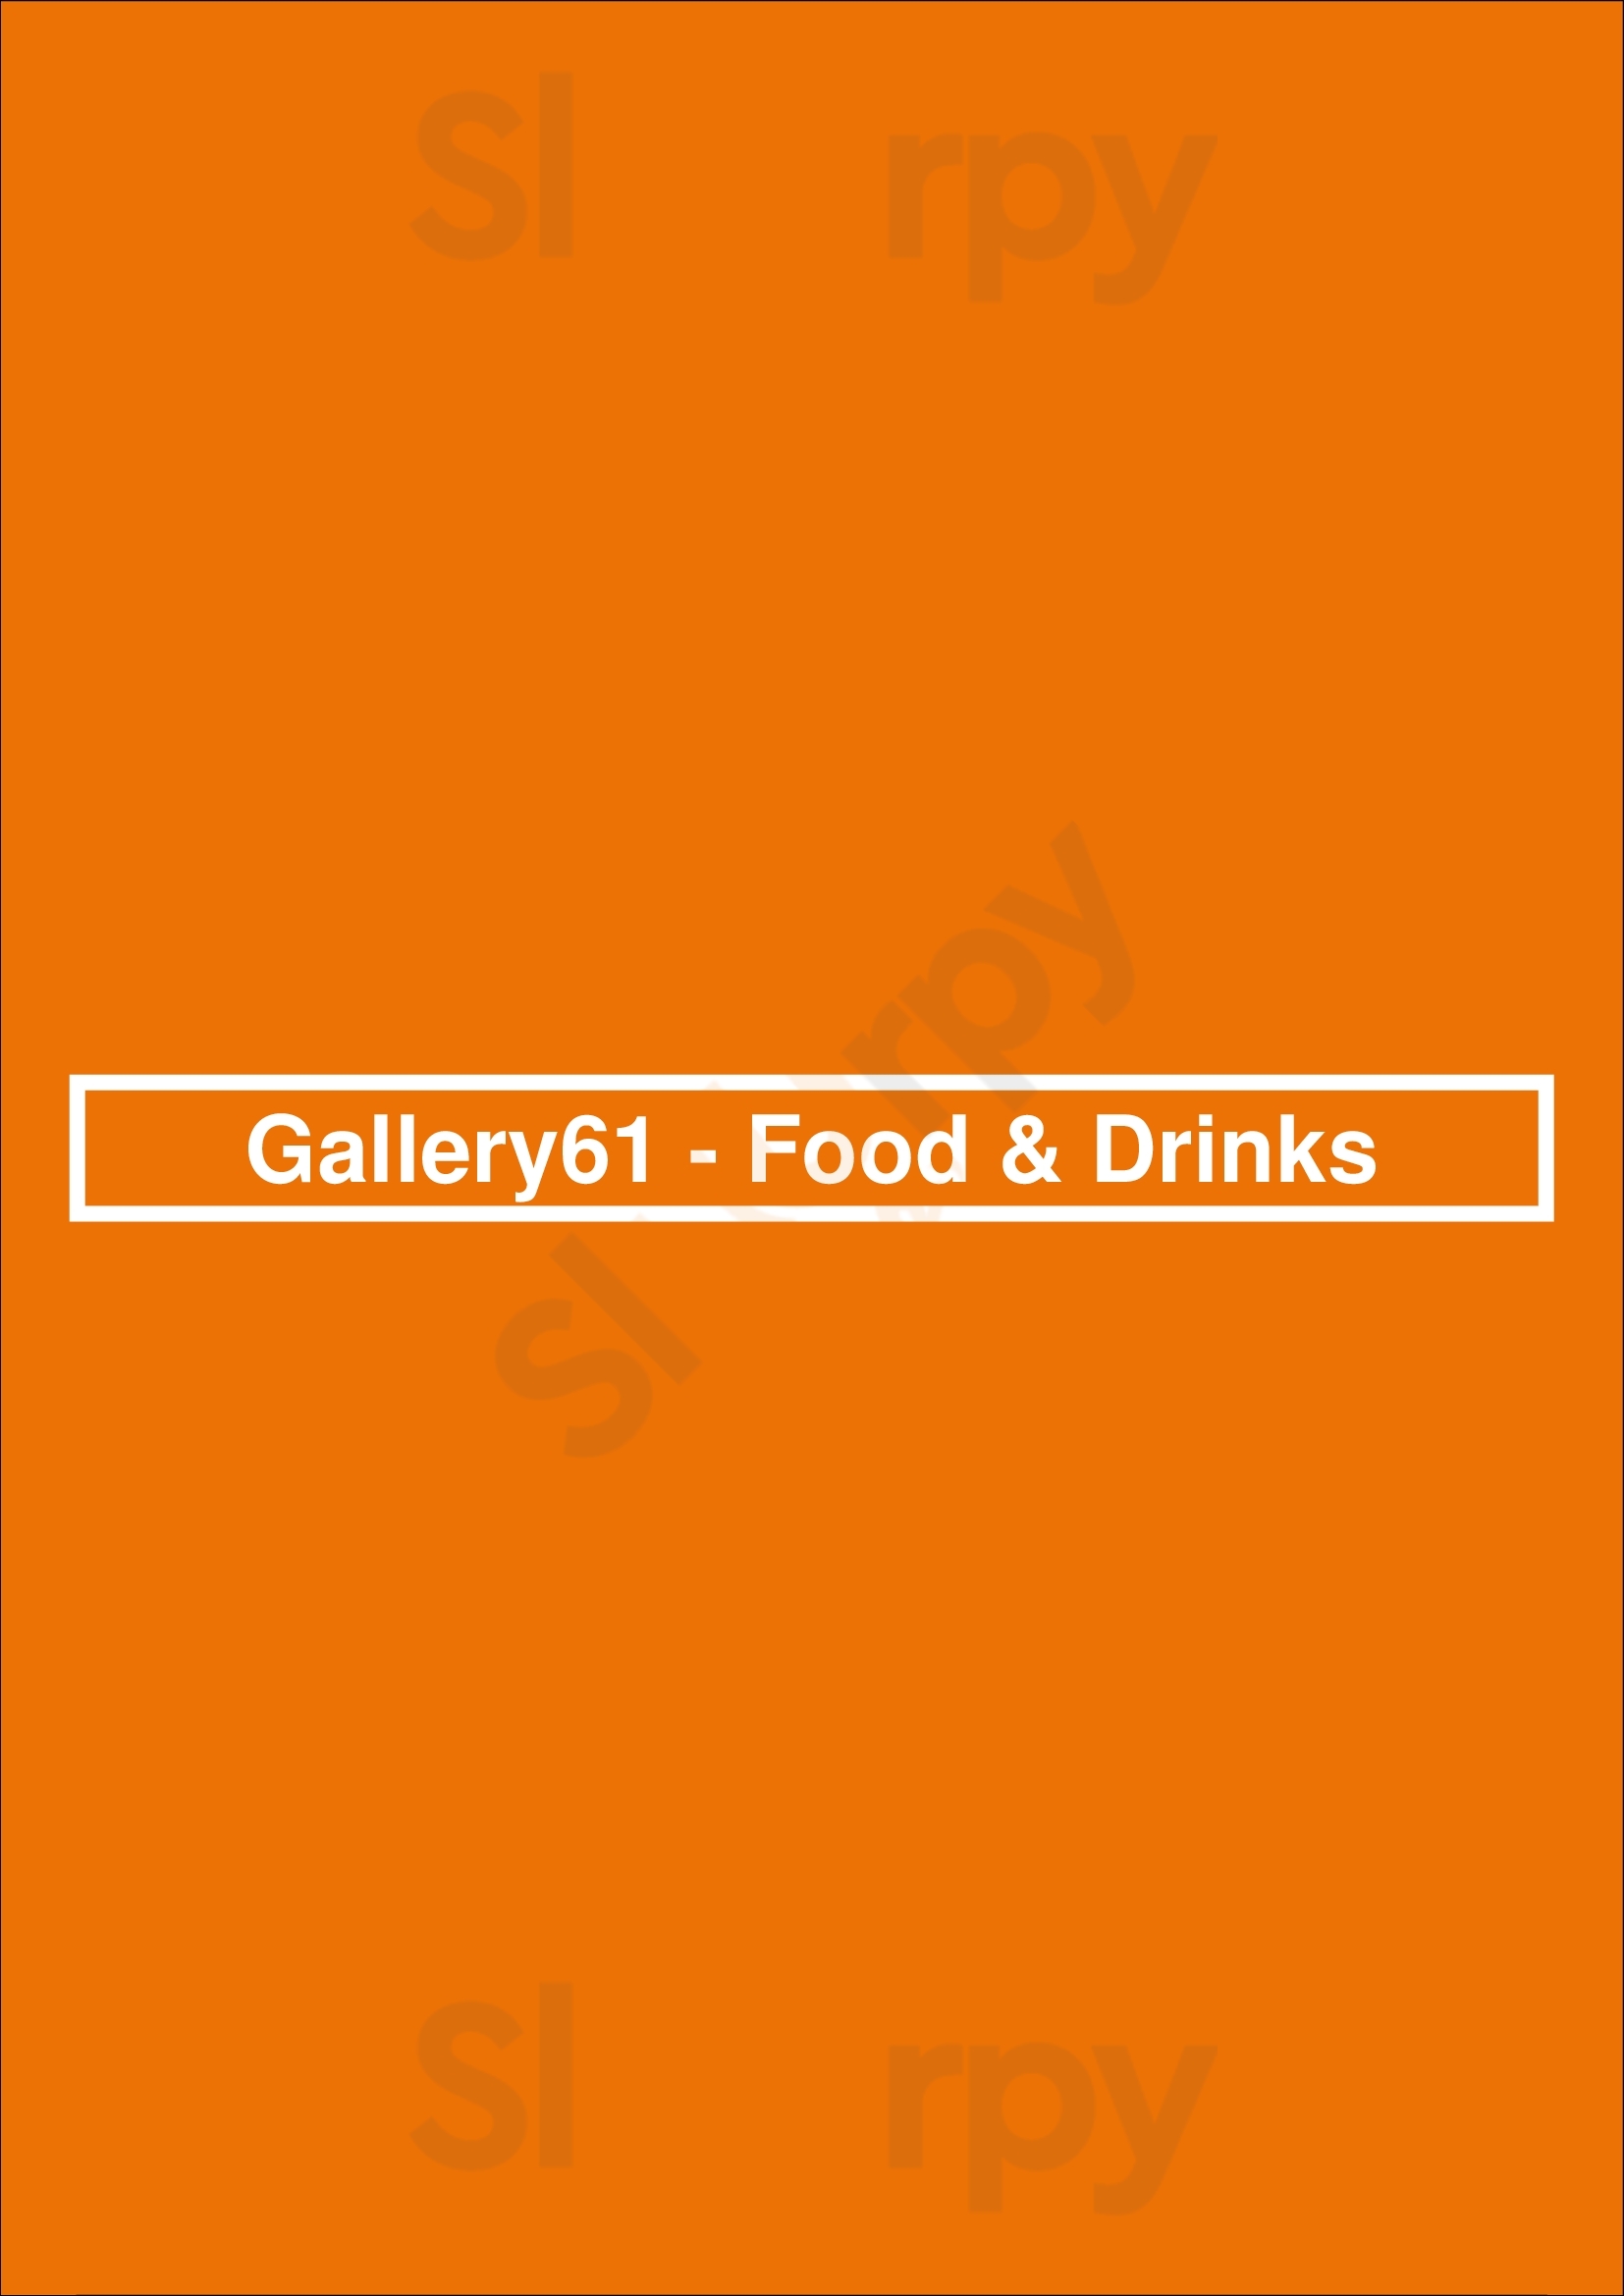 Gallery61 - Food & Drinks Den Haag Menu - 1